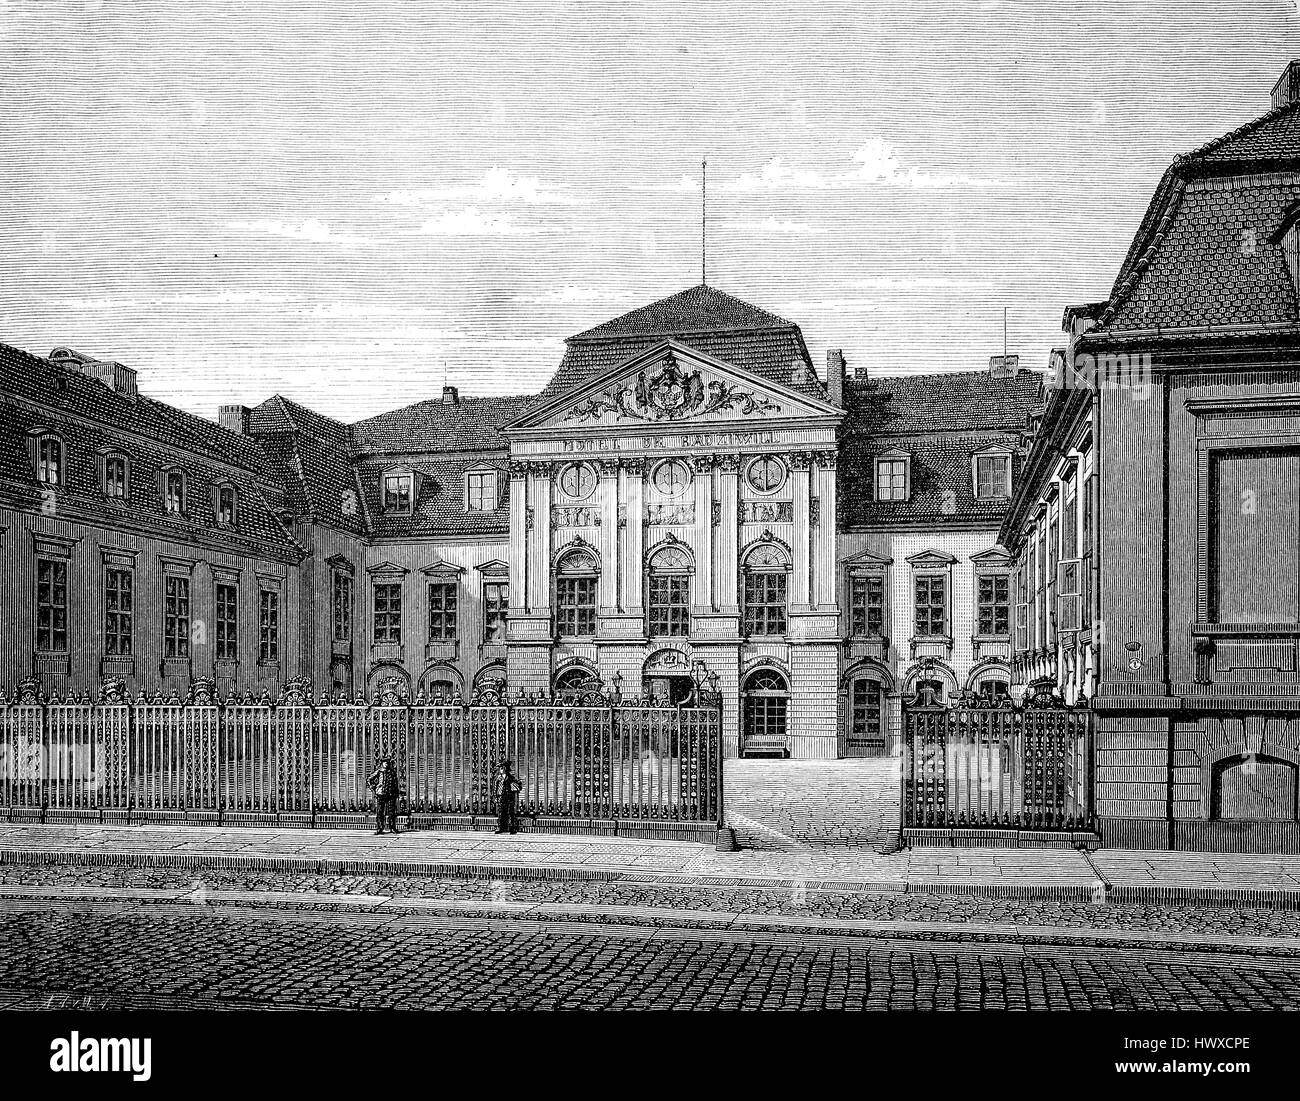 Das Palais Radziwill, auch genannt Palais Schulenburg oder der alten Reichskanzlei in Berlin, Deutschland, Reproduktion eines Bildes, Holzschnitt aus dem Jahr 1881, digital verbessert Stockfoto